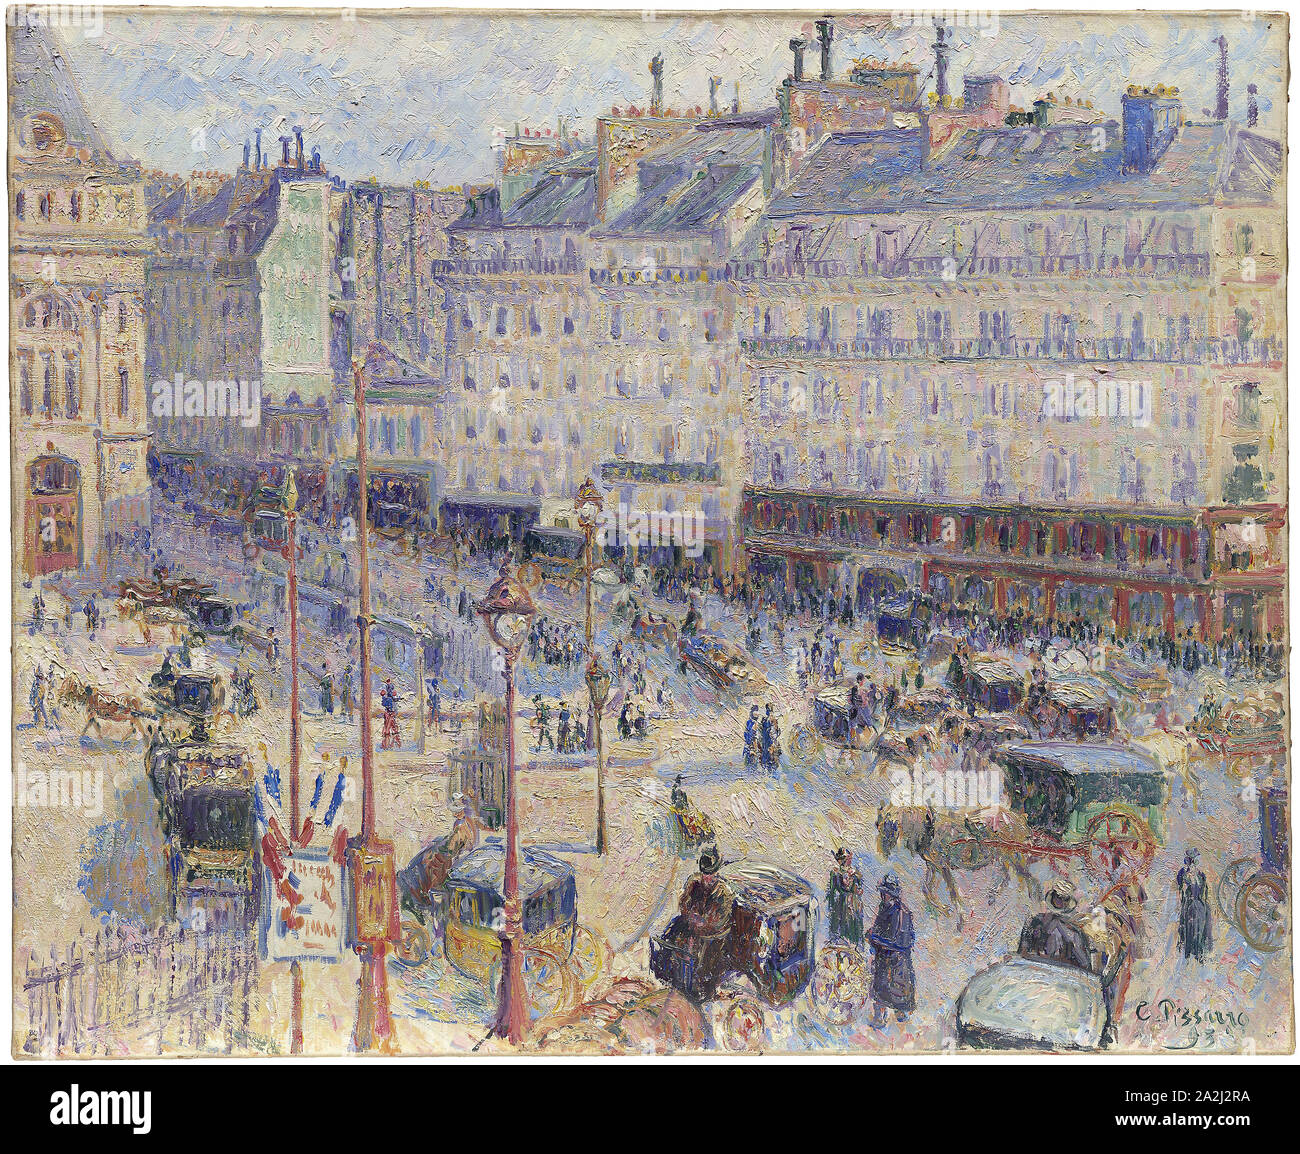 La Place du Havre, Parigi, 1893, Camille Pissarro, Francese, 1830-1903, Francia, olio su tela, 60,1 × 73,5 cm (23 5/8 × 28 13/16 in Foto Stock